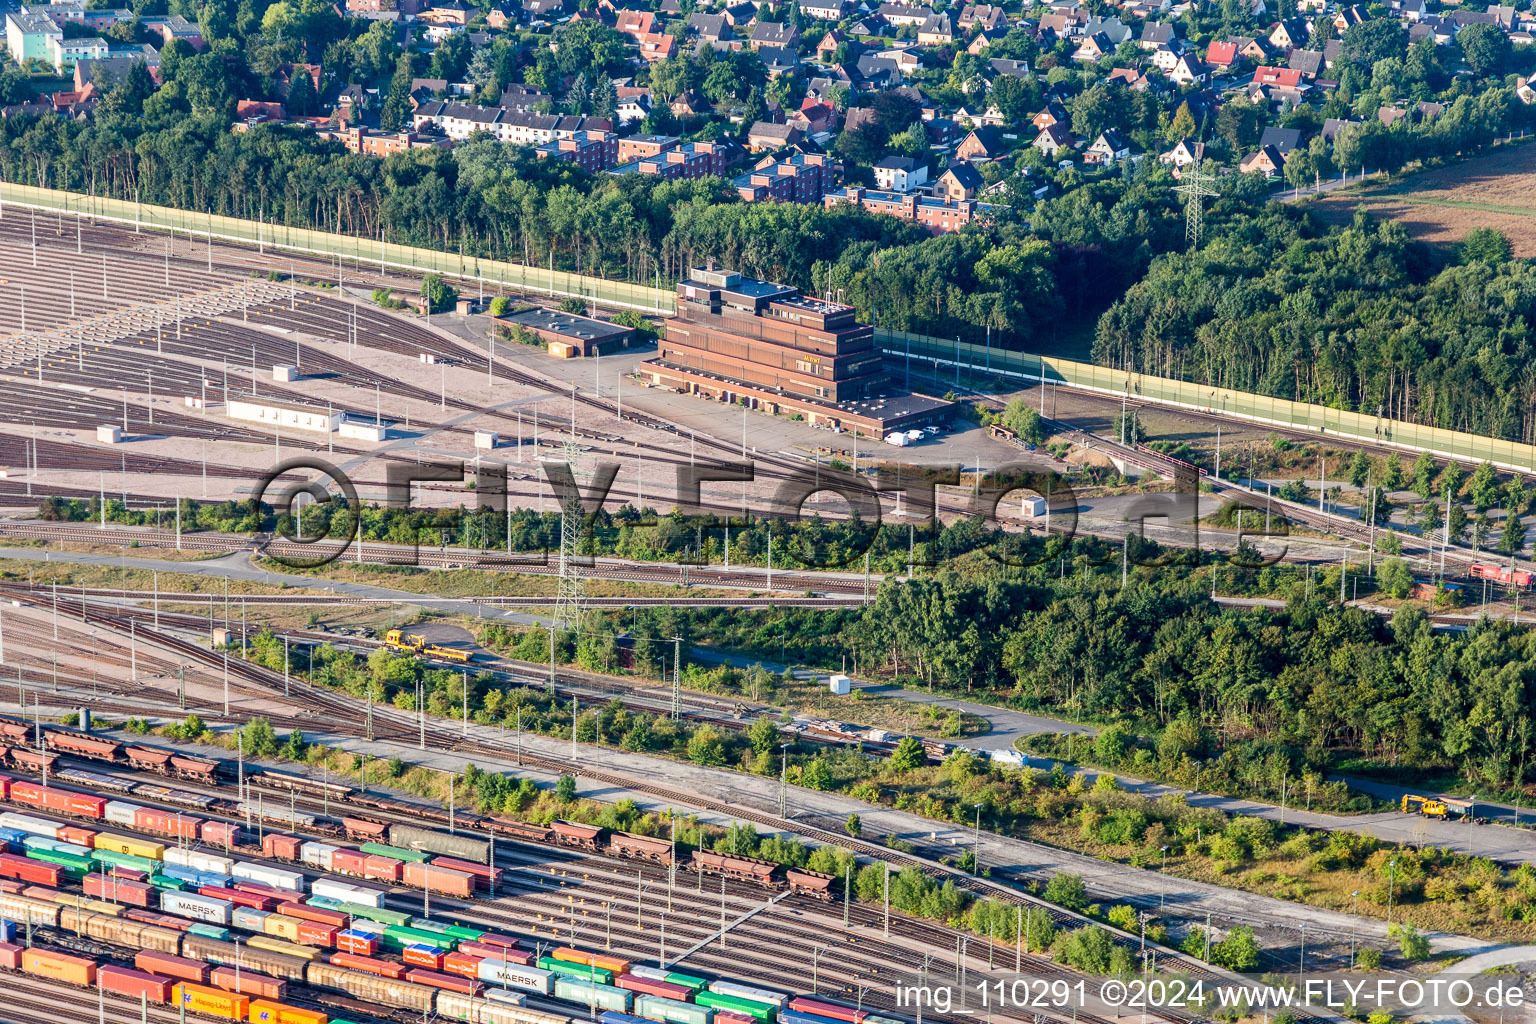 Lignes ferroviaires et voies sur les voies d'évitement et les voies de manœuvre de la gare de triage et de fret de la Deutsche Bahn Maschen dans le quartier Maschen à Seevetal à Maschen dans le département Basse-Saxe, Allemagne d'en haut